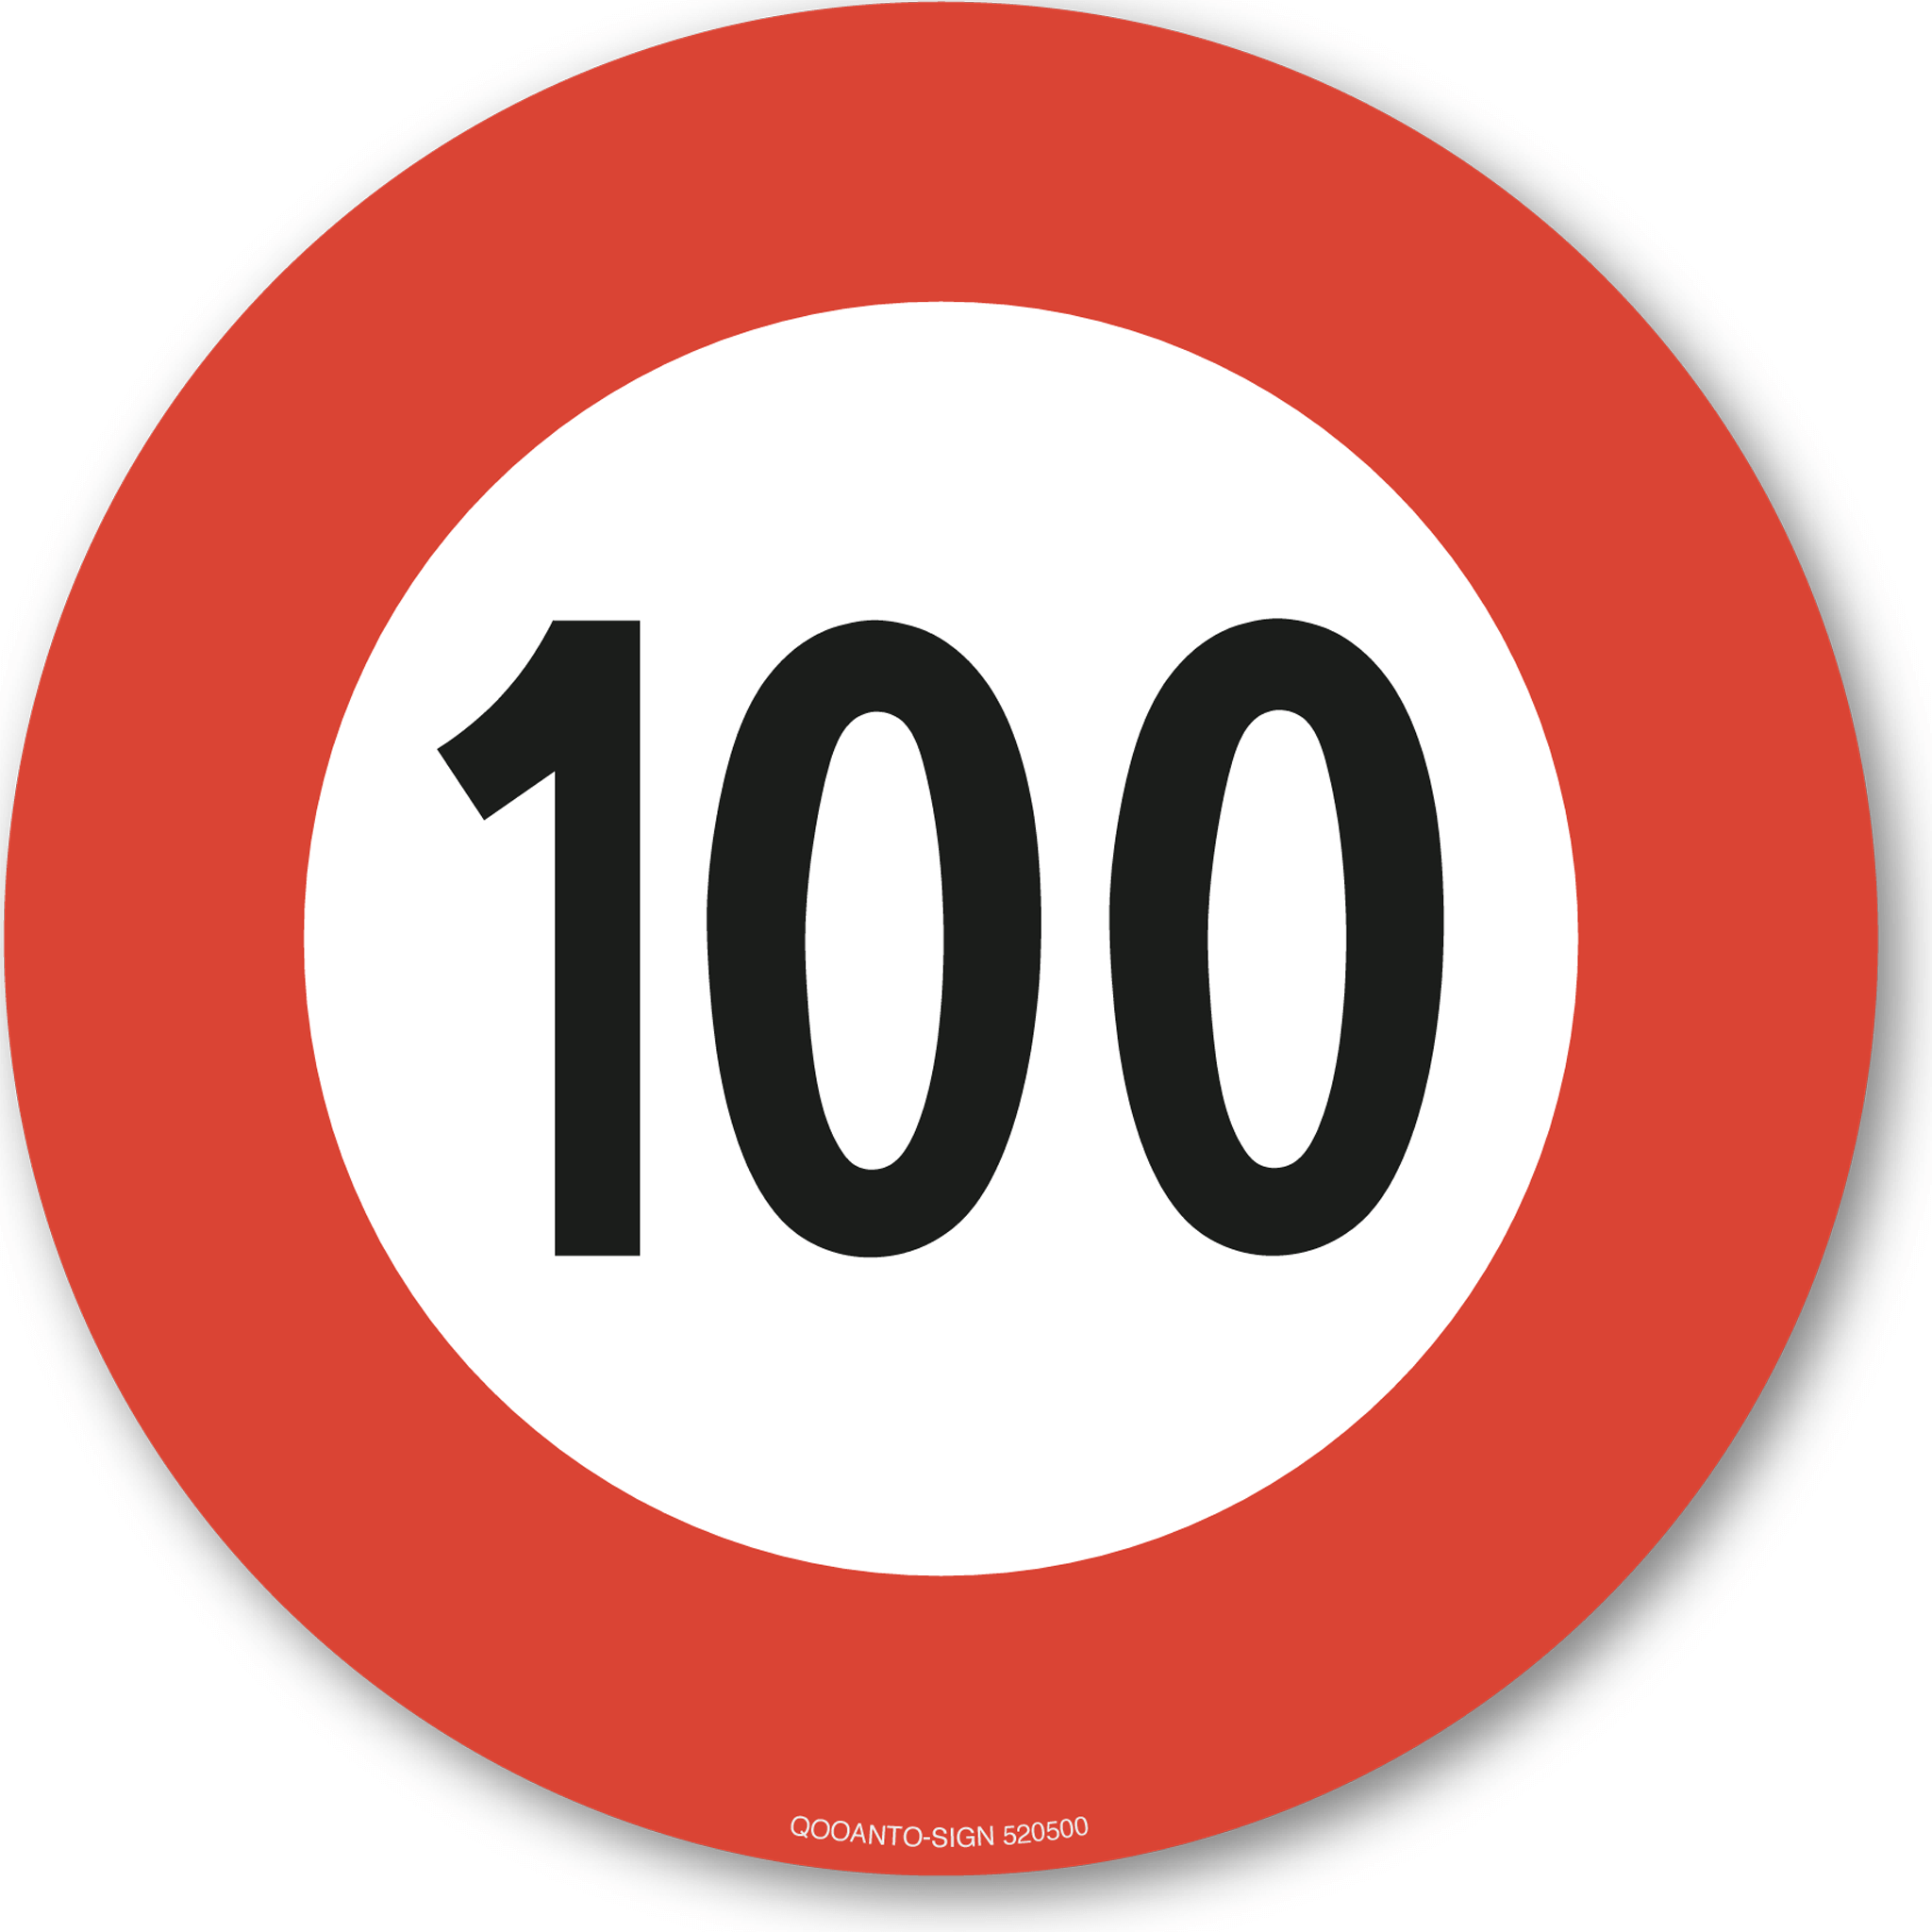 100 Höchstgeschwindigkeit Verkehrsschild oder Aufkleber aus Alu